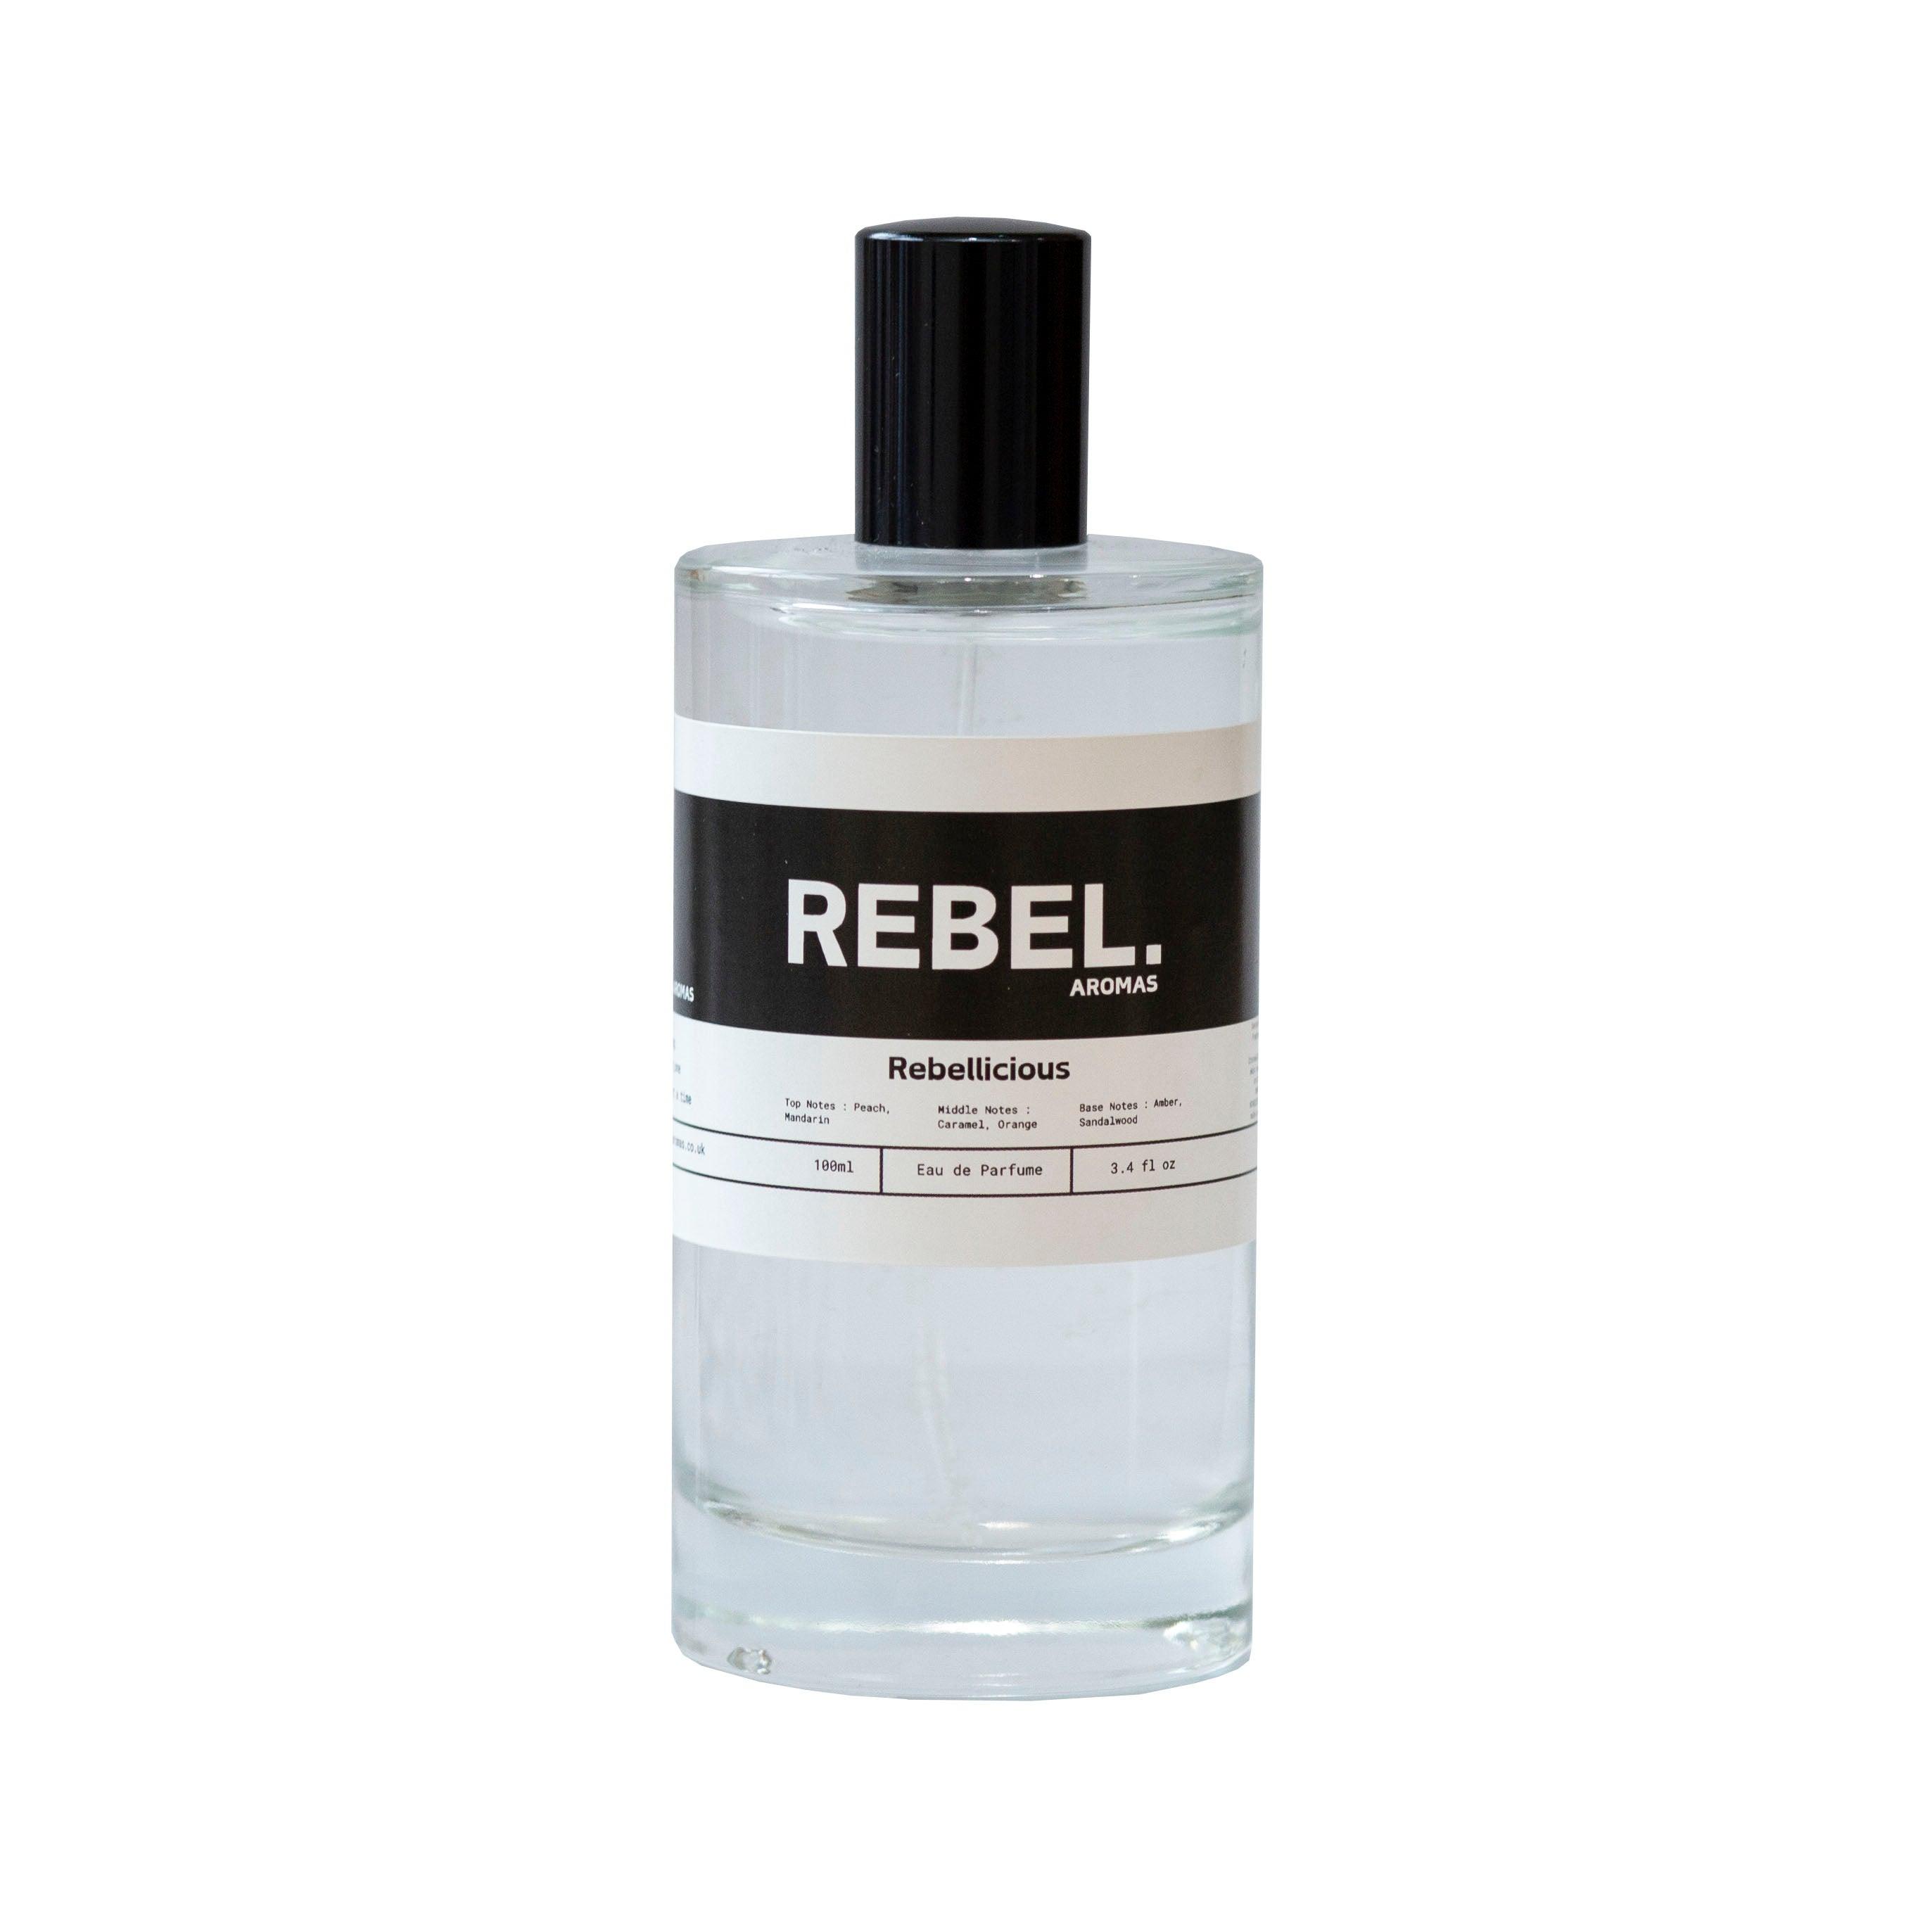 Rebellicious - Rebel Aromas